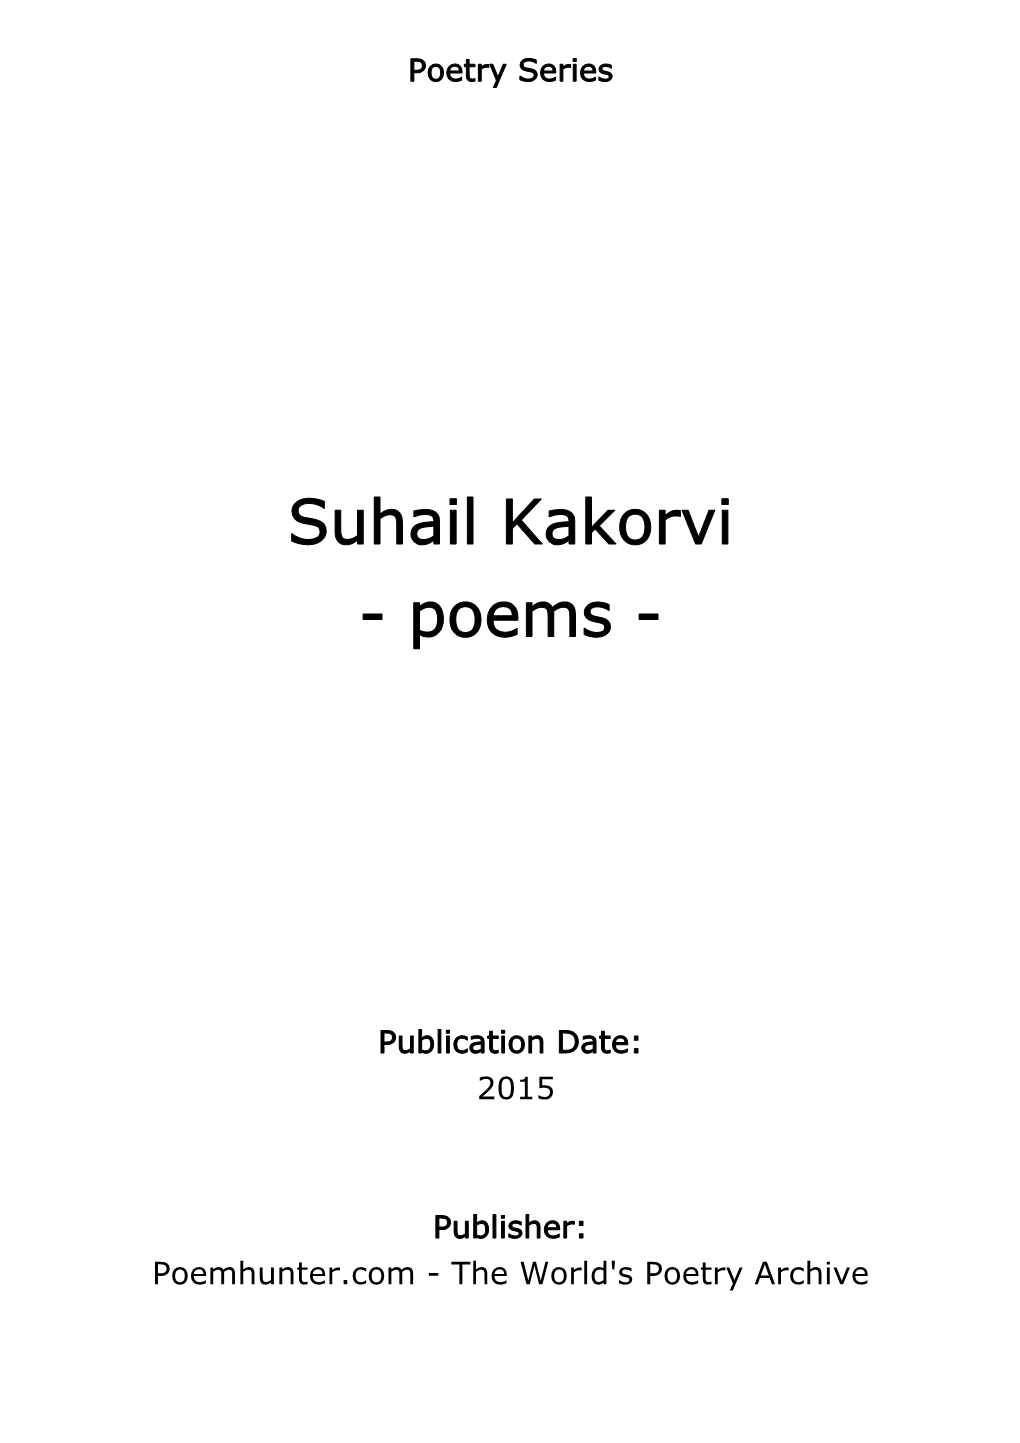 Suhail Kakorvi - Poems